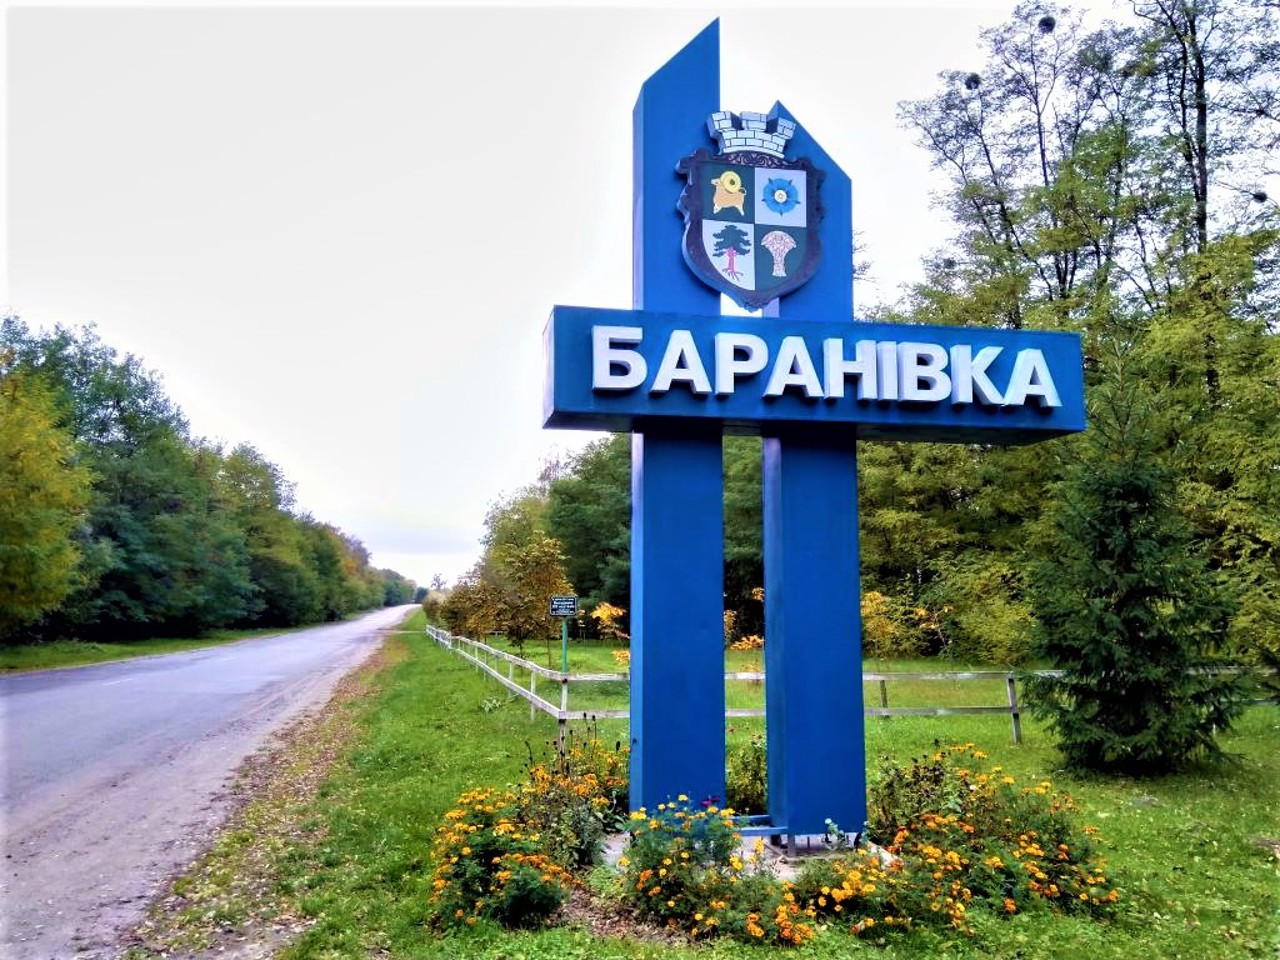 Baranivka city